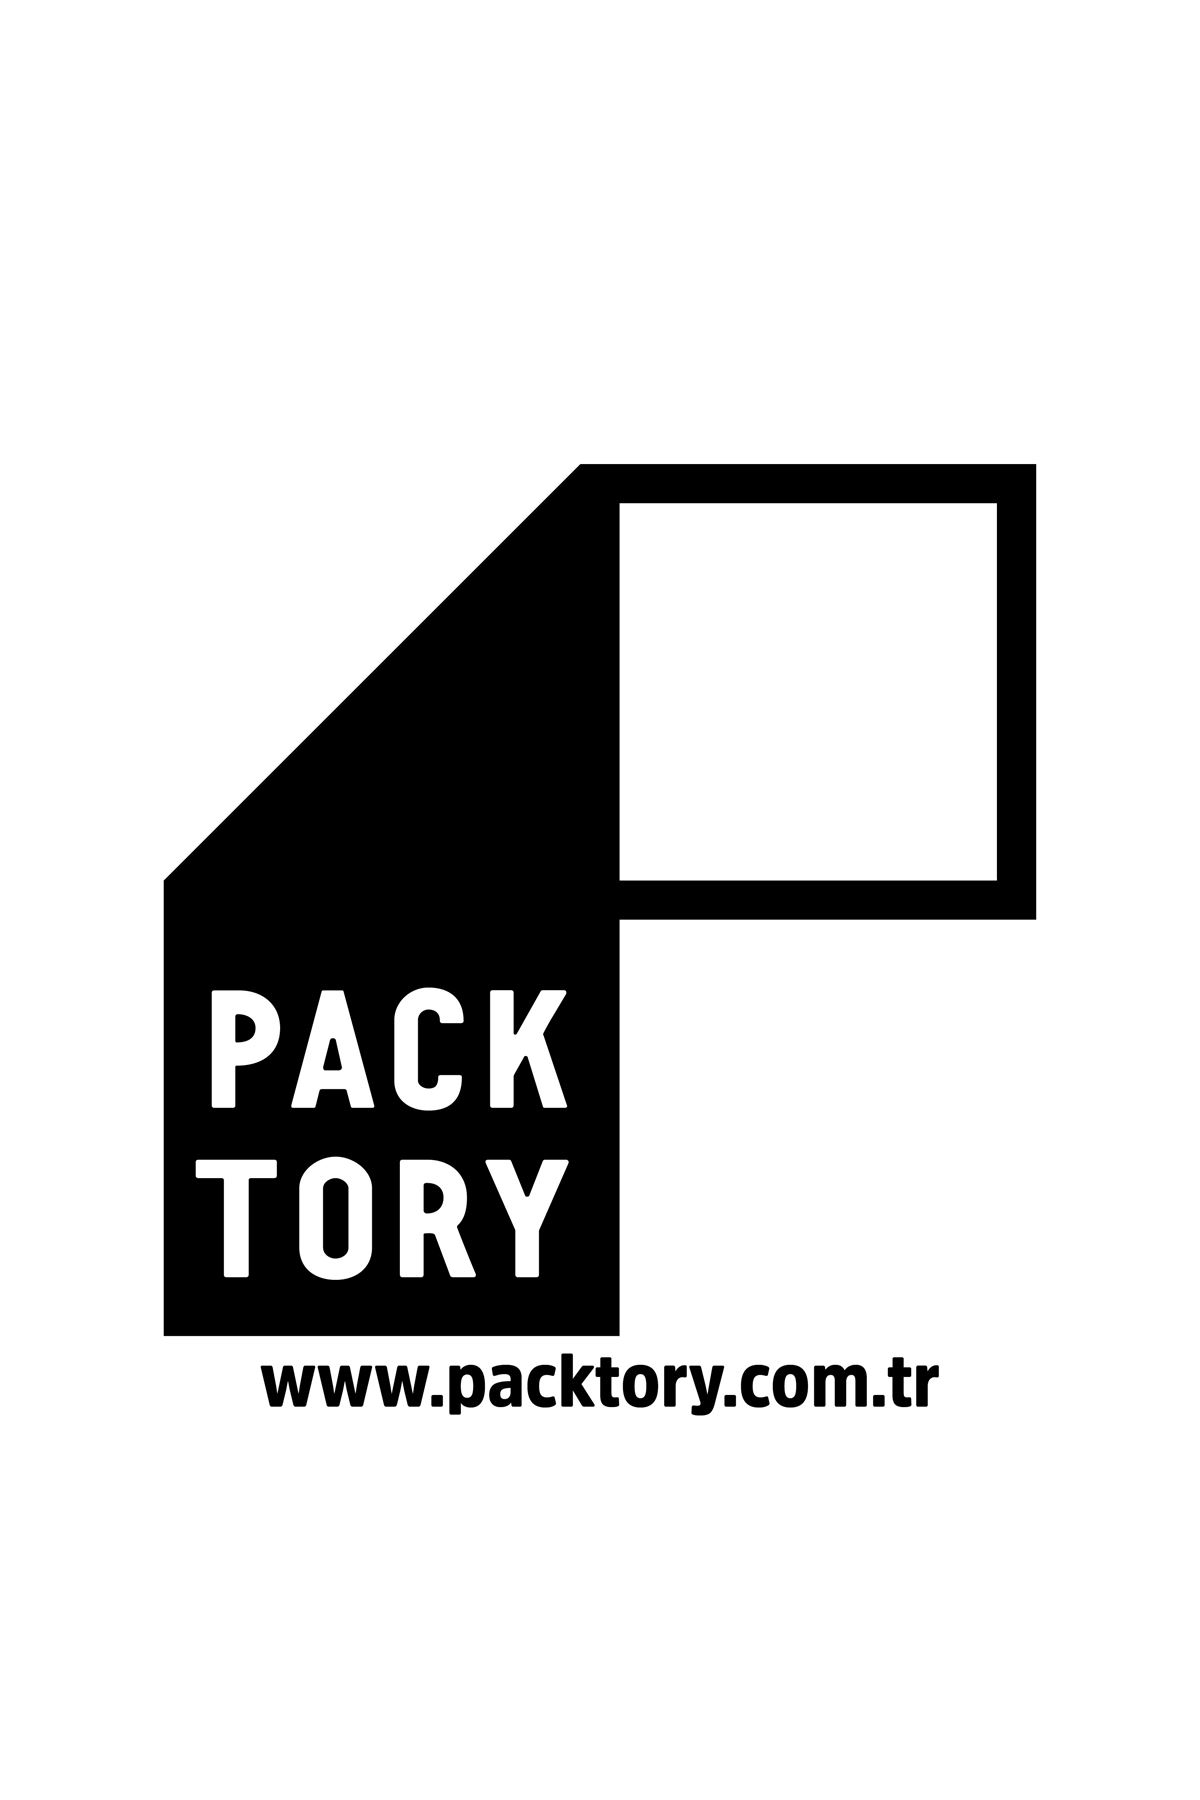 Packtory 11 x 18,5 + 3,5 Cm Şeffaf Kilitli Doypack Ambalaj 100 Gr. 250 Adet